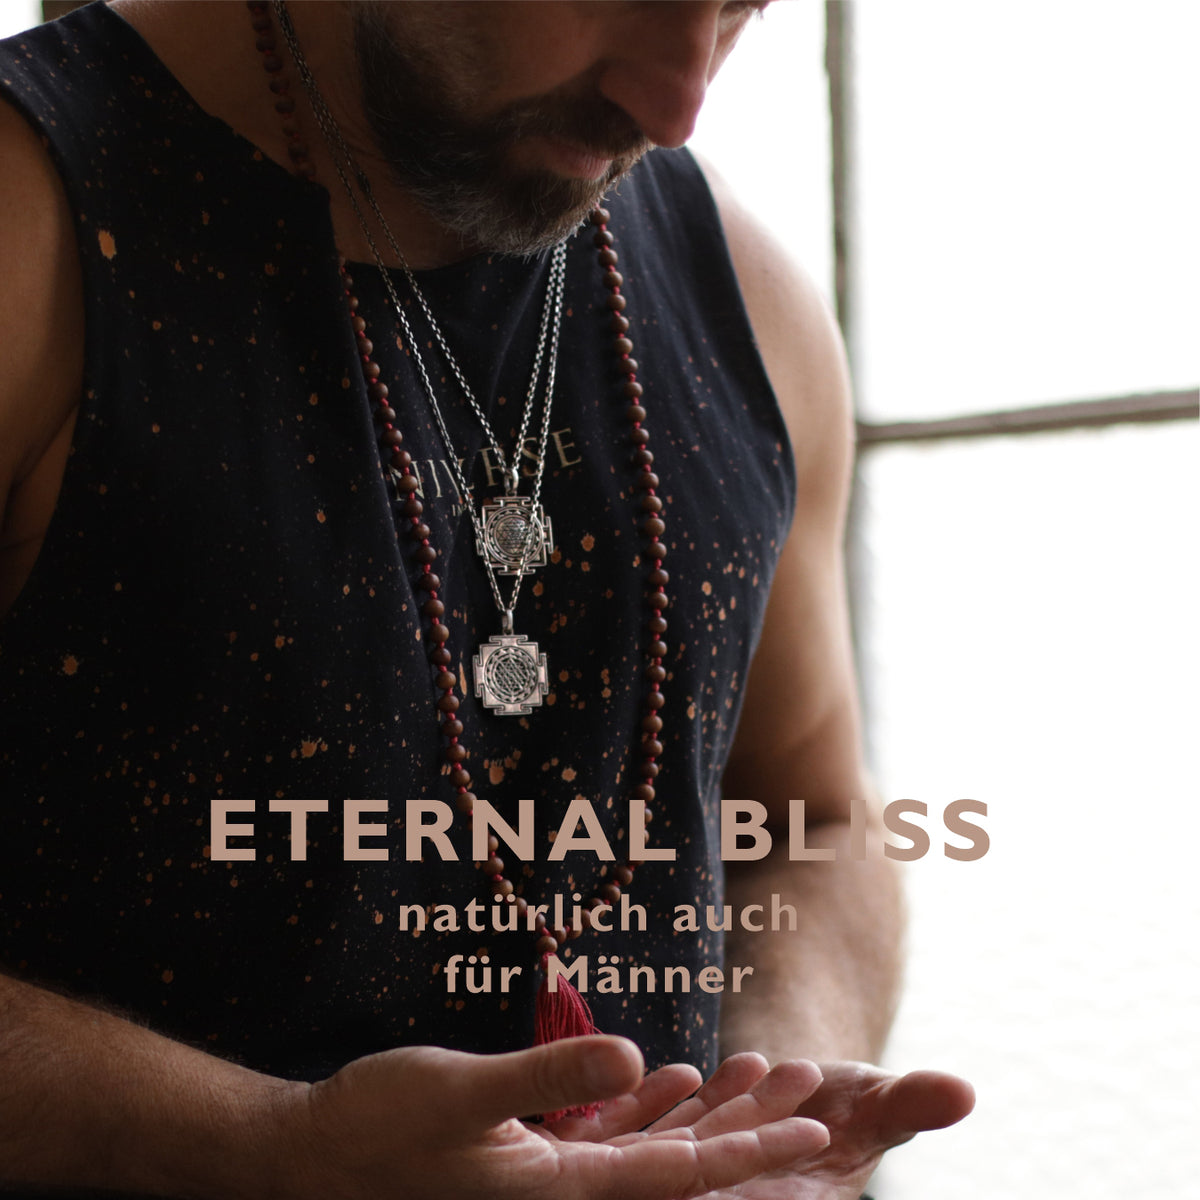 spiritual-men-jewellery-eternal-bliss